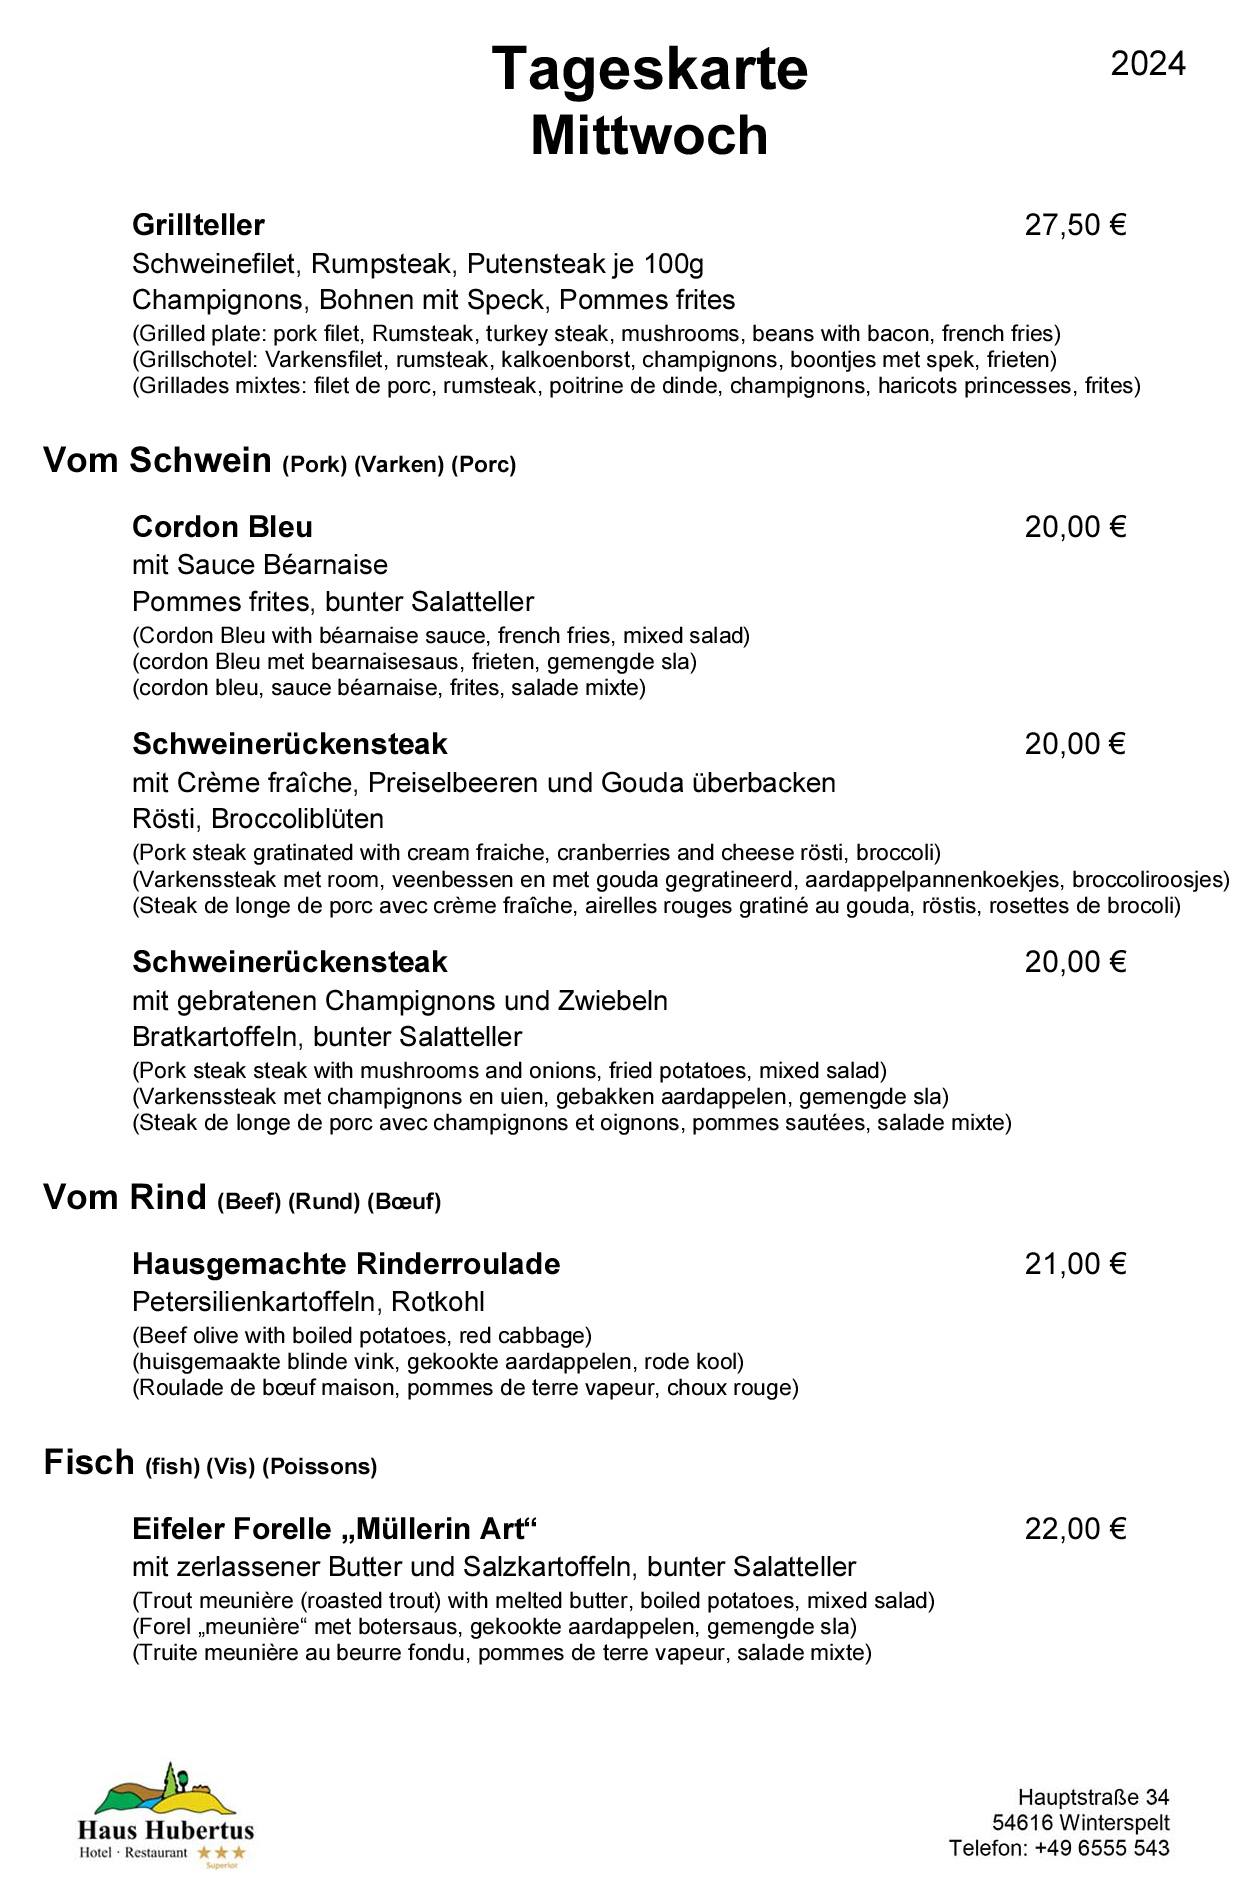 Hotel - Restaurant Haus Hubertus - Menu 01/2024 - Daily menu / Wednesday